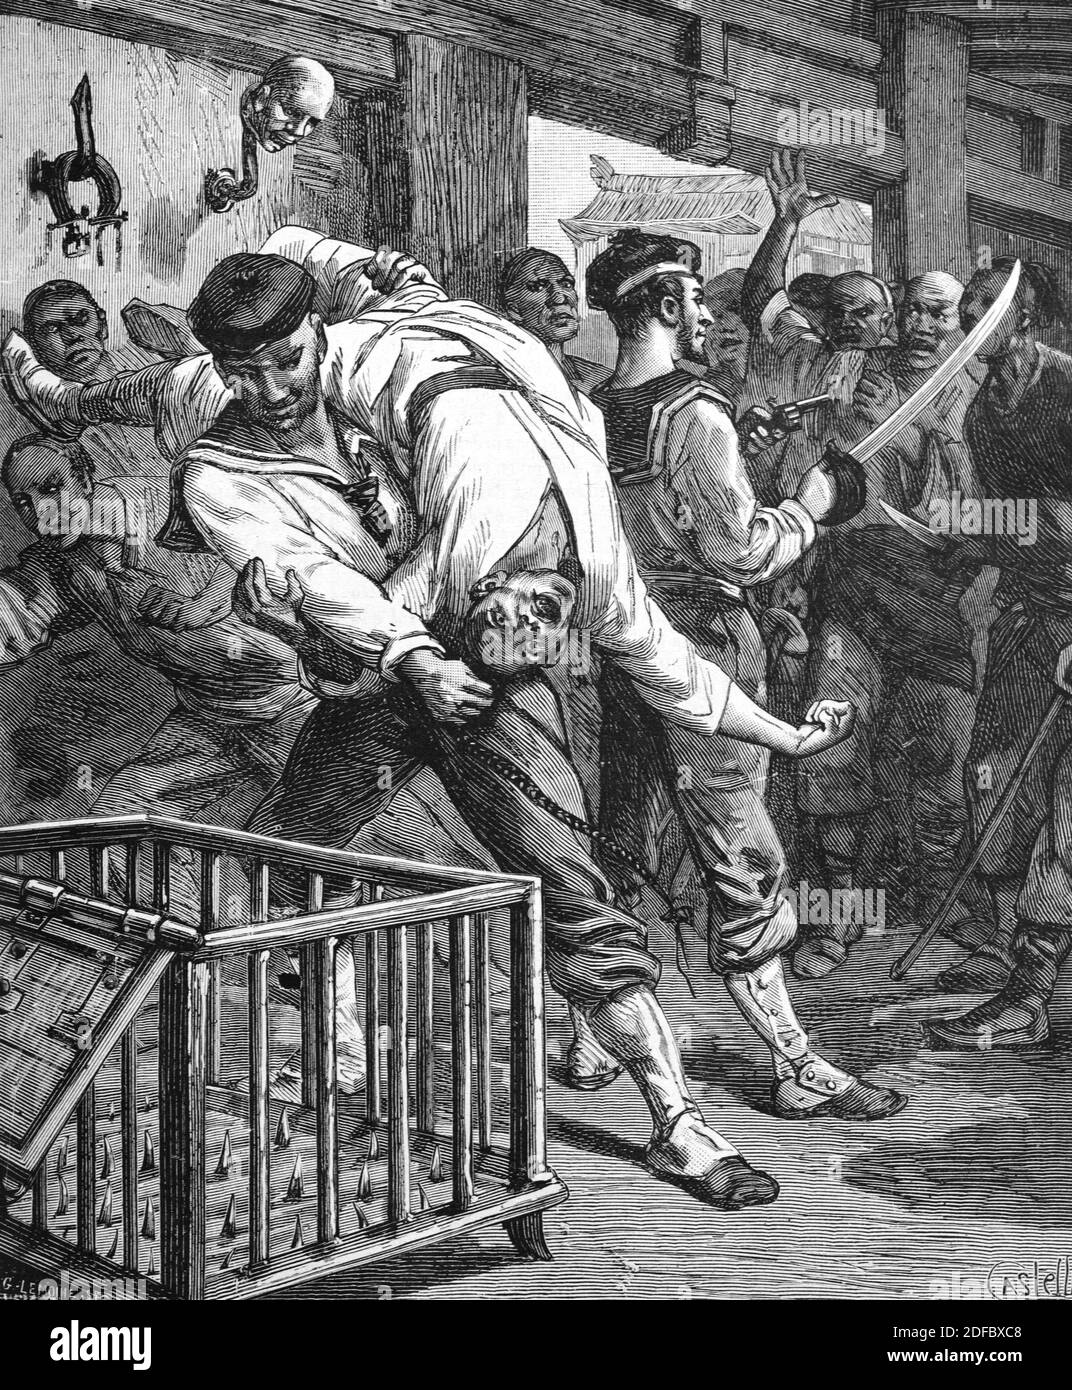 Gefängnis, Gefangene & Folter in Spiked Box oder Crate Shanghai China (engr Castelli 1884) Vintage Illustration oder Gravieren Stockfoto